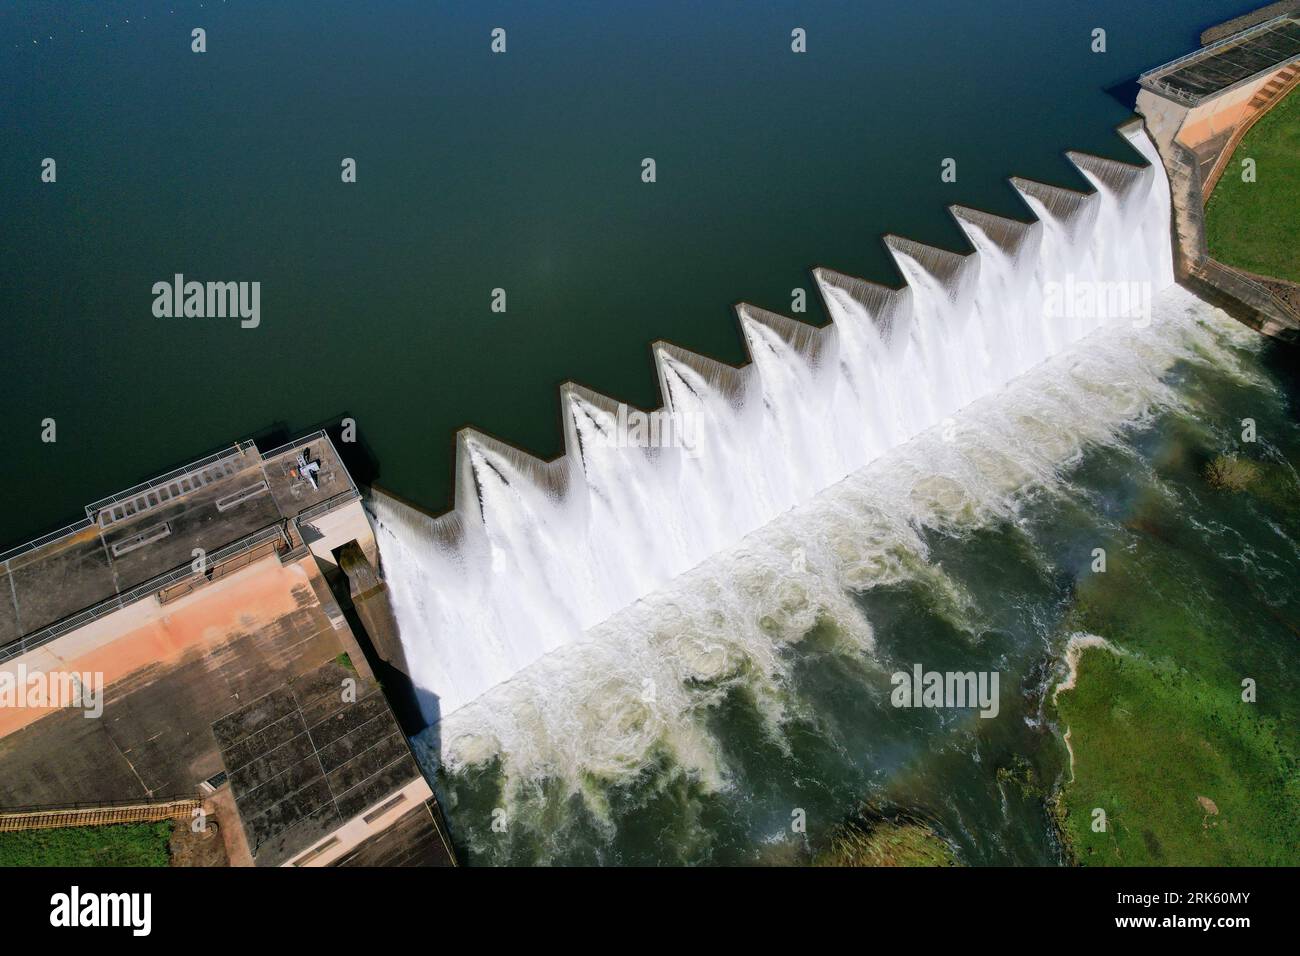 Vue panoramique de l'eau qui coule sur le mur du barrage de Midmar dans le KwaZulu Natal - Afrique du Sud Banque D'Images